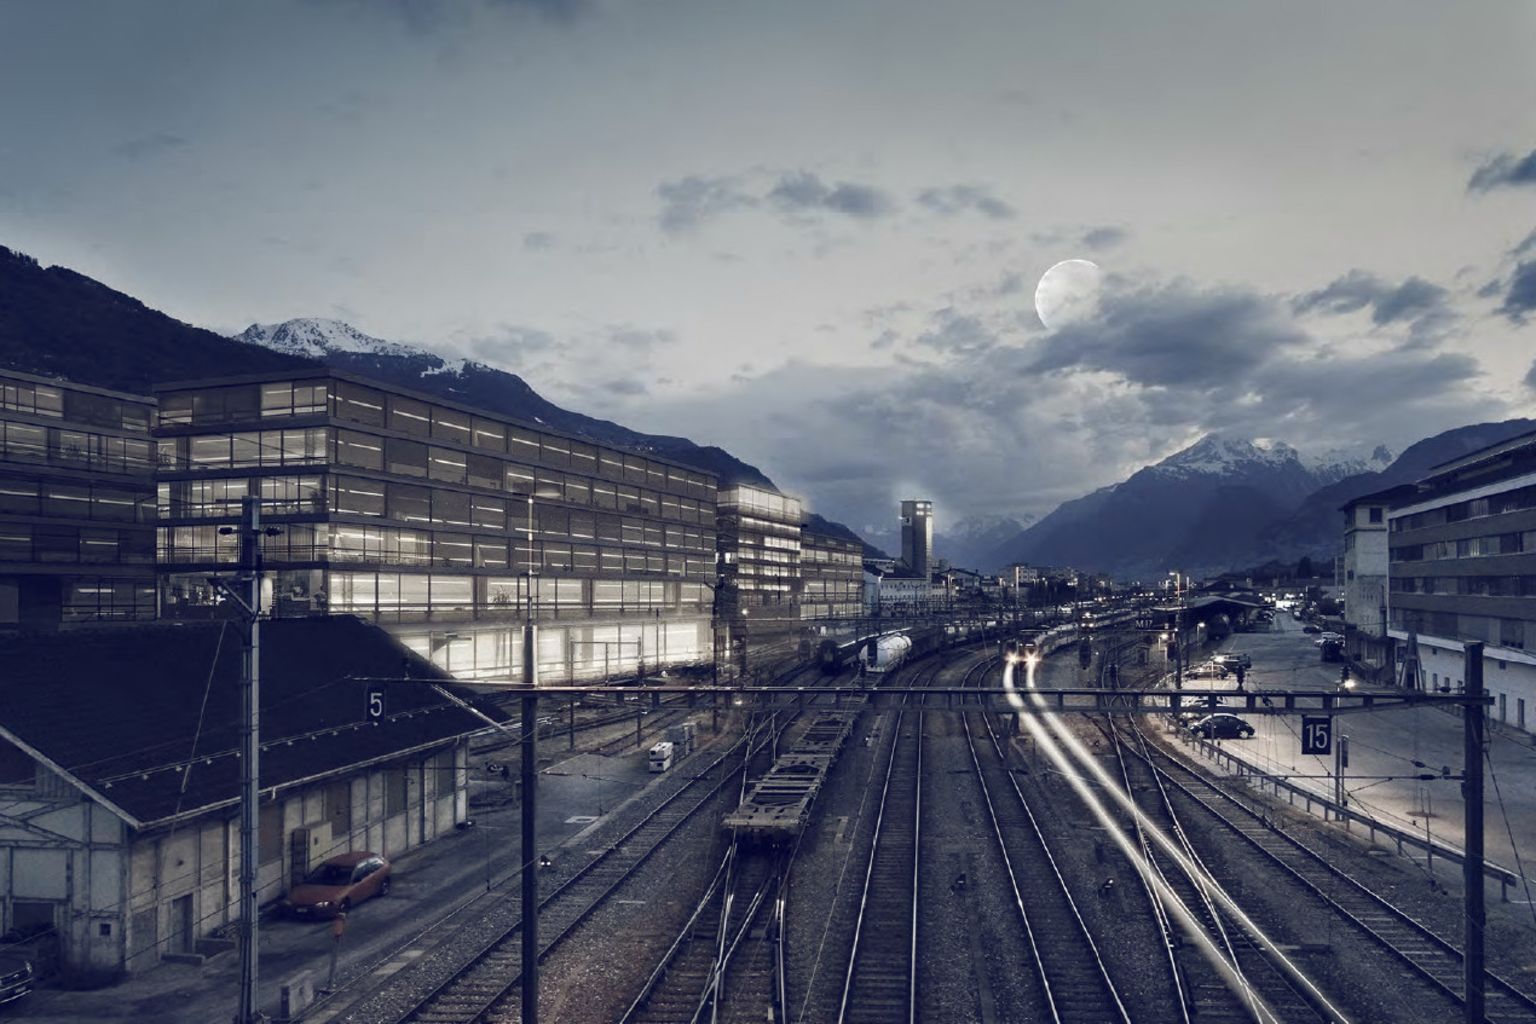 L’implantation de l’EPFL en Valais représente un projet d’importance stratégique pour l’avenir du canton.